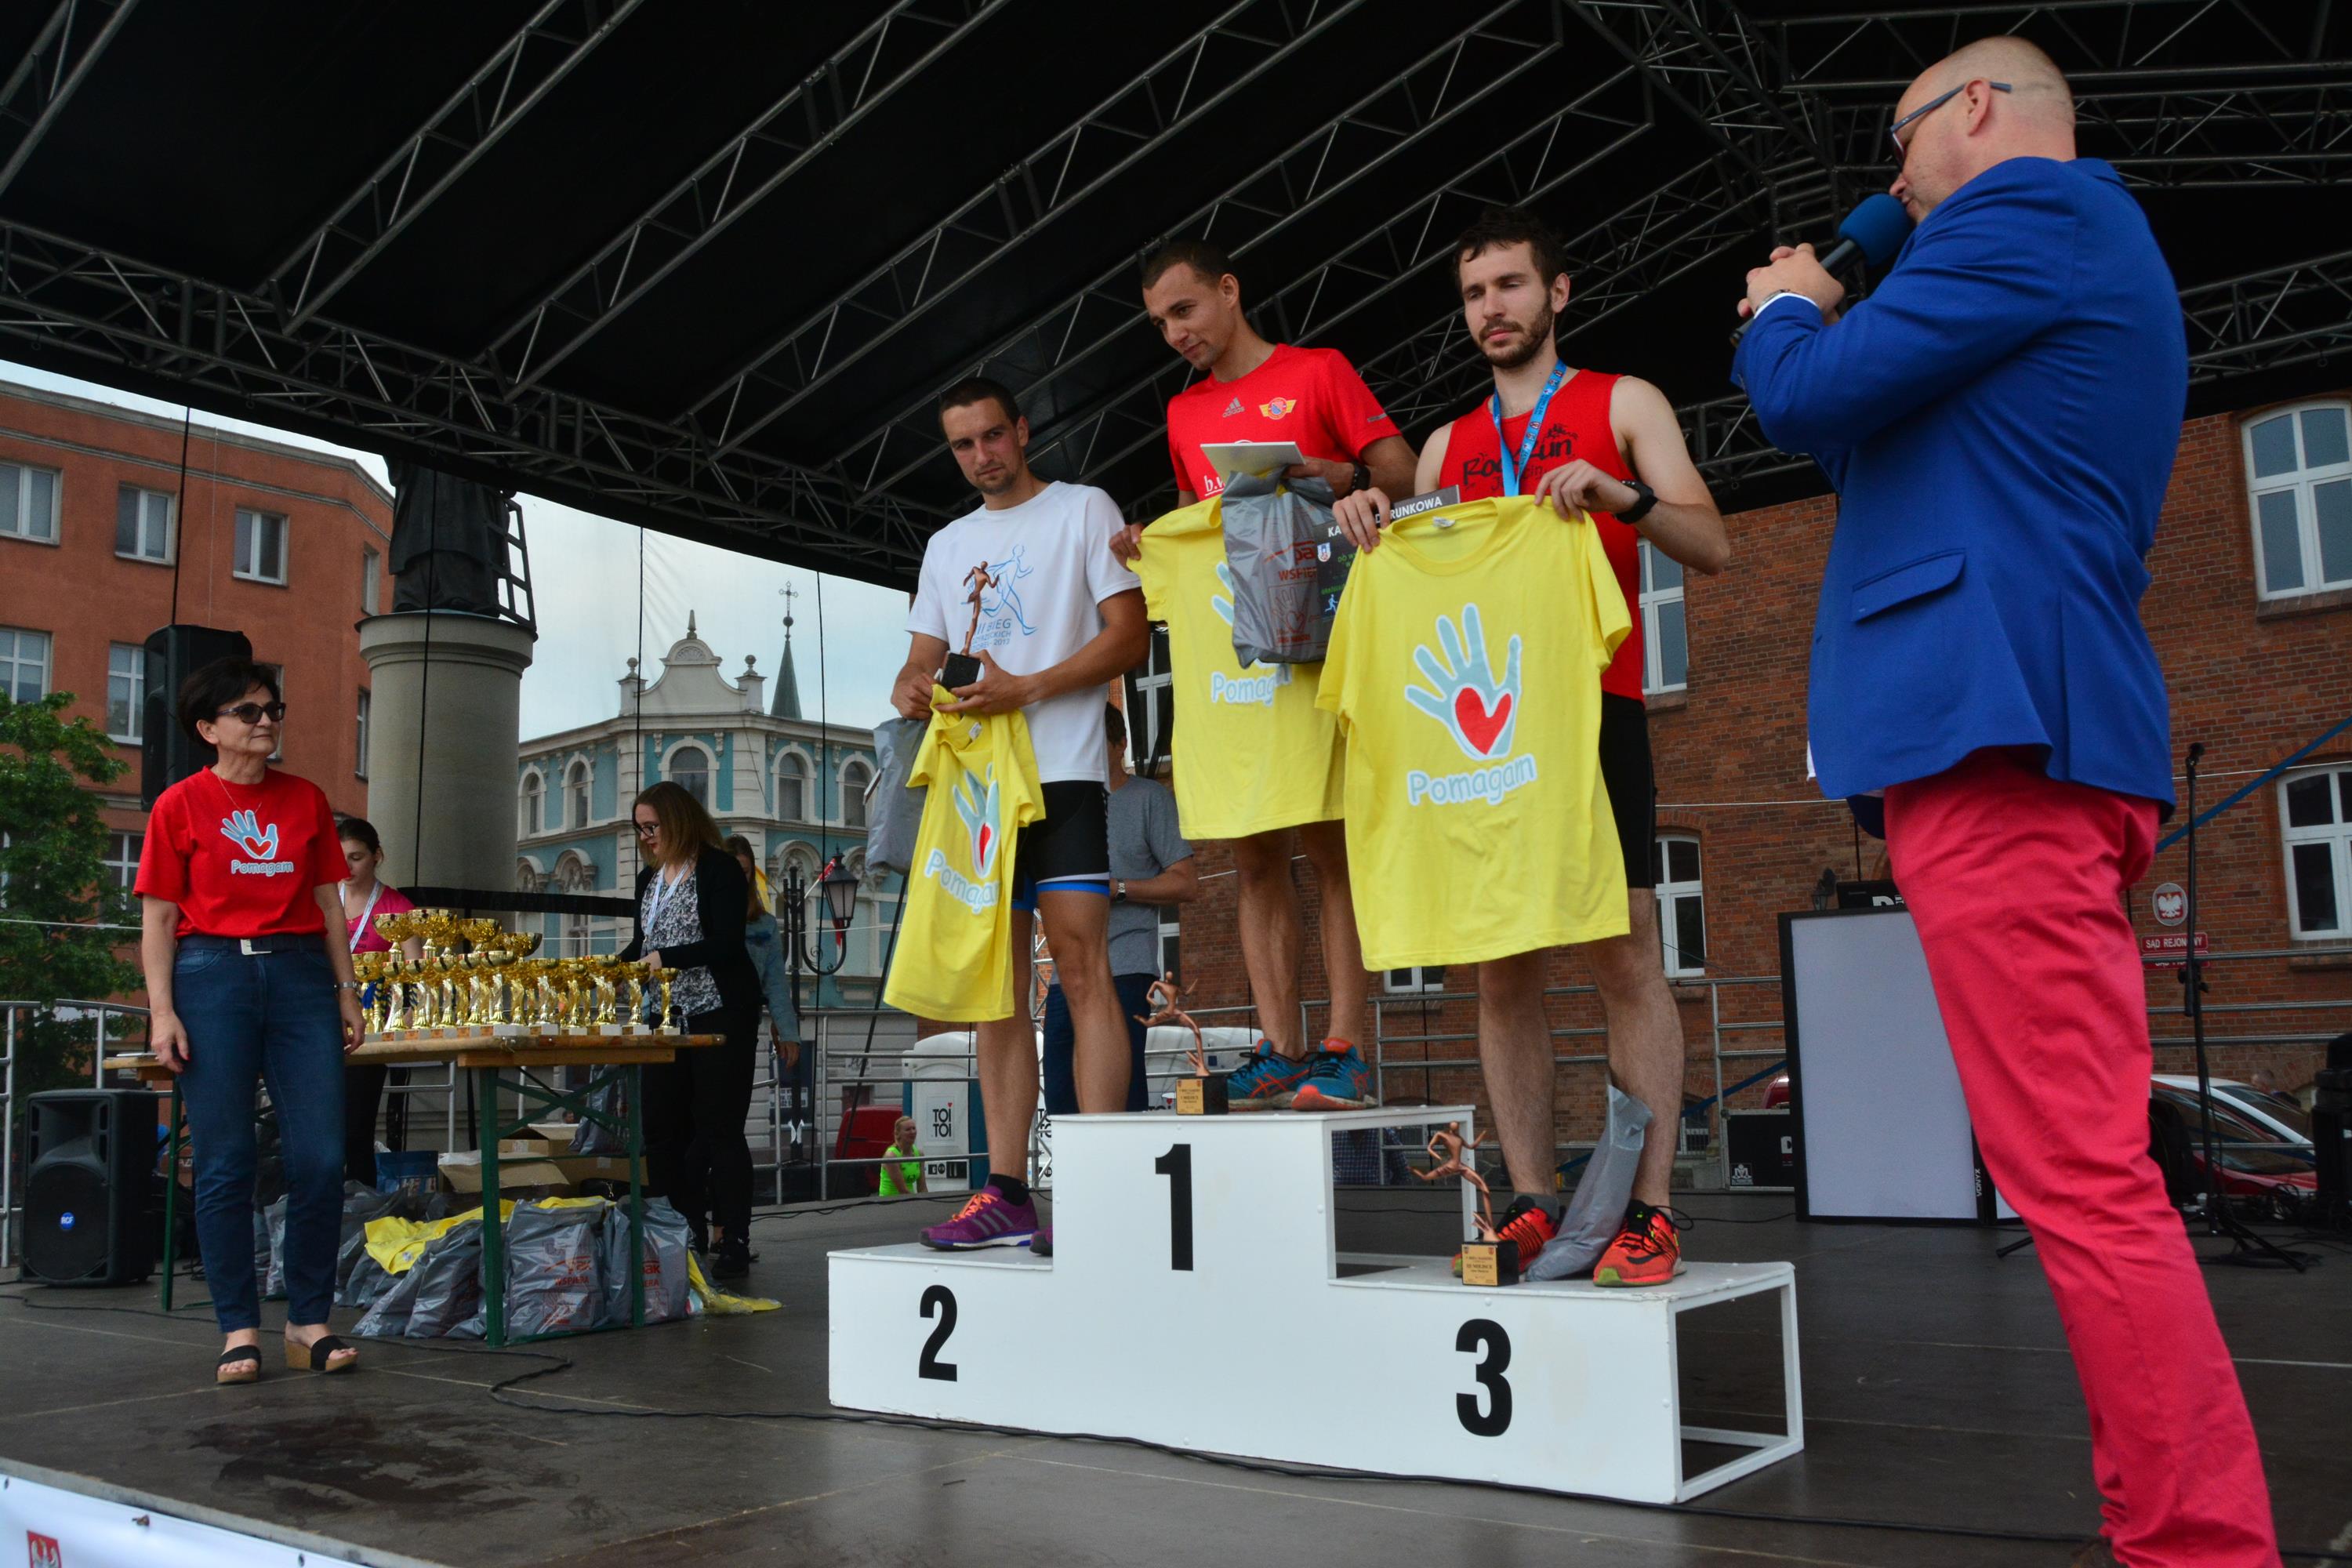 Najlepsi zawodnicy w kategorii Open mężczyzn - Adam Konieczny (1), Krzysztof Szymanowski (2) i Dawid Jagła (3)